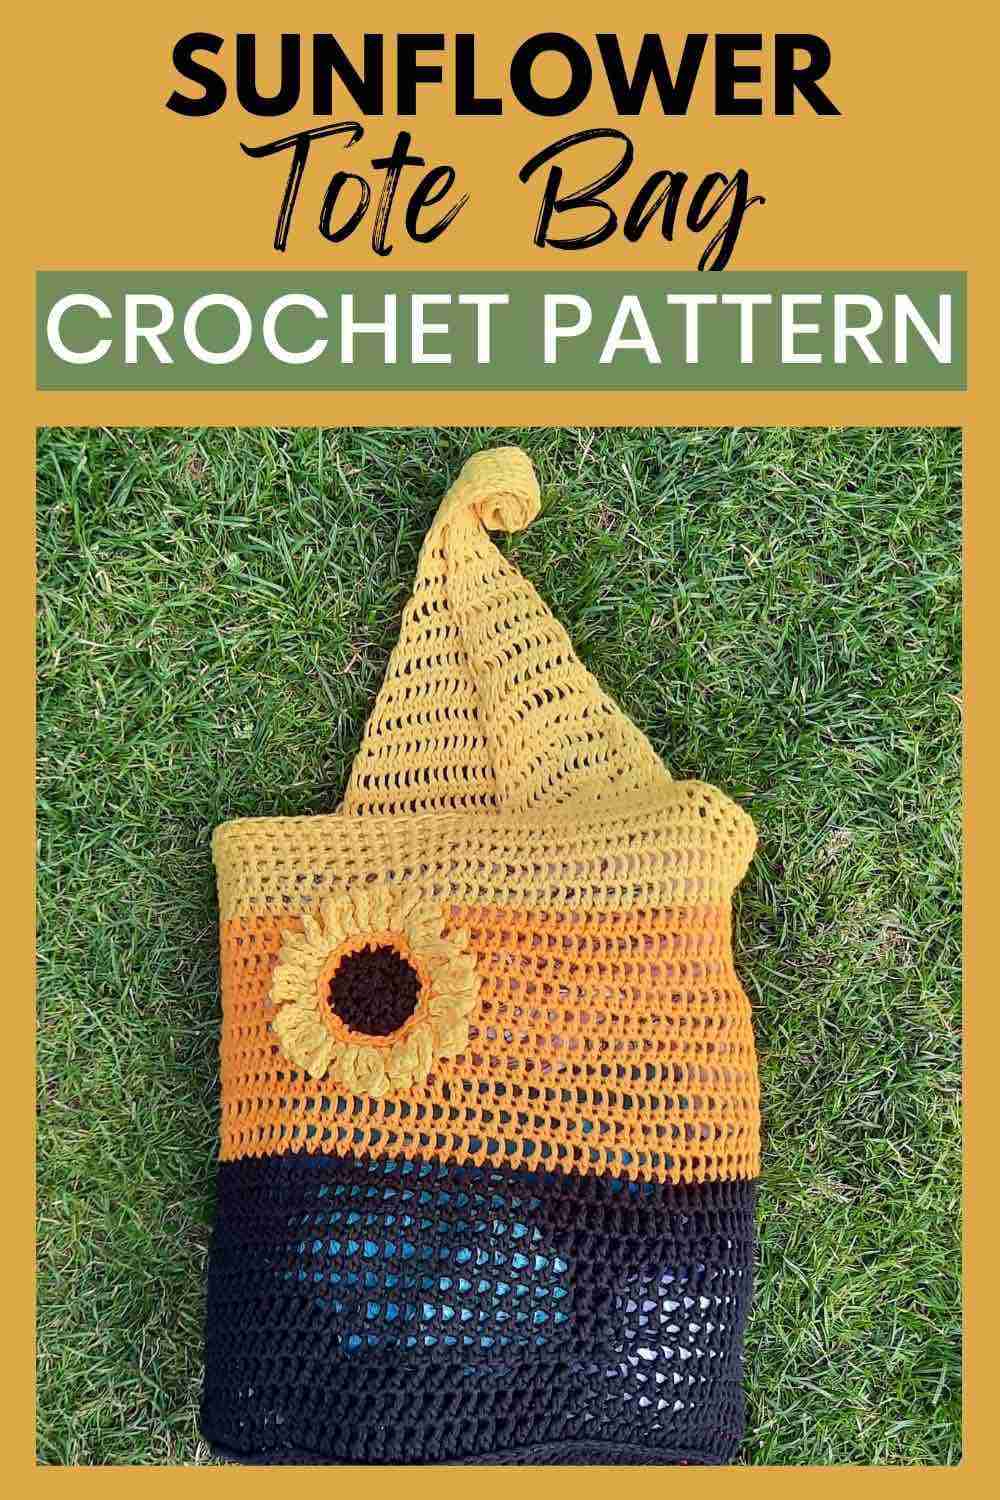 Crochet Tote Bag Pattern Sunflower